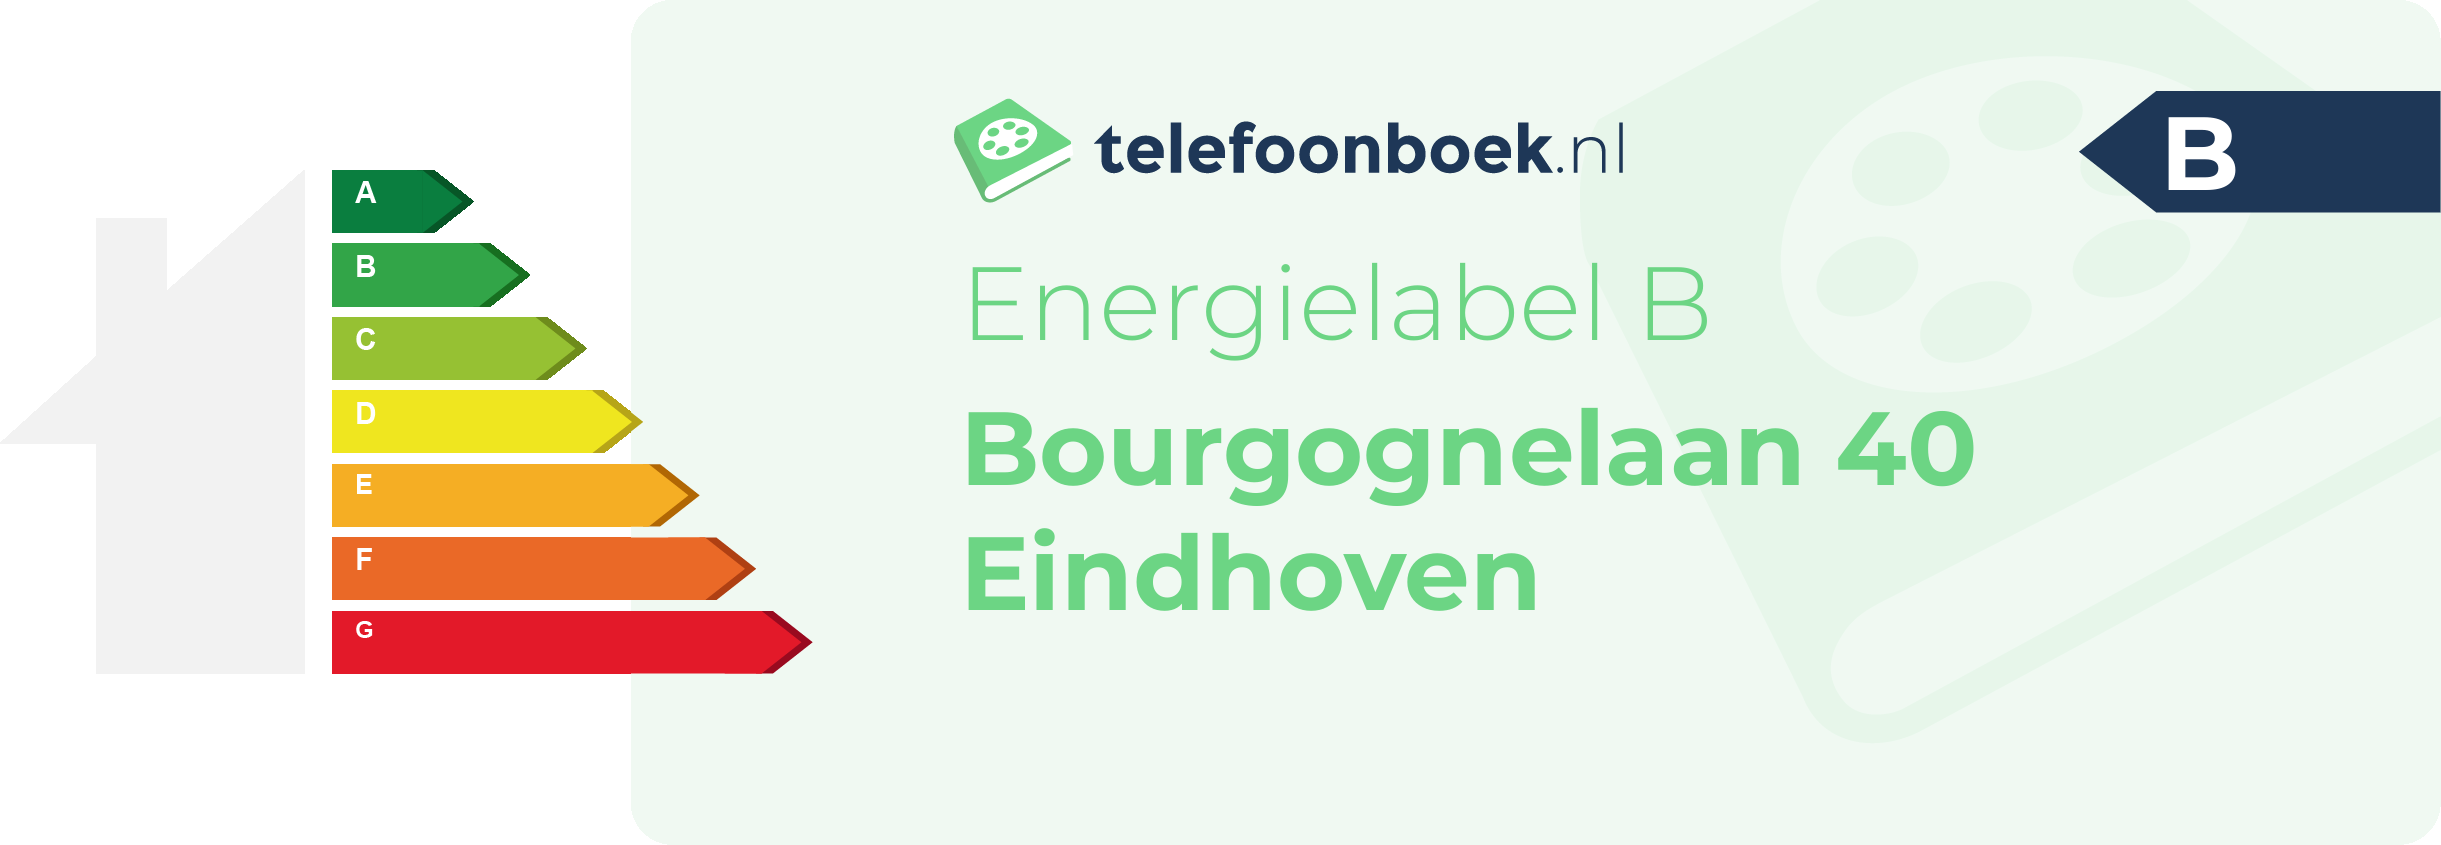 Energielabel Bourgognelaan 40 Eindhoven